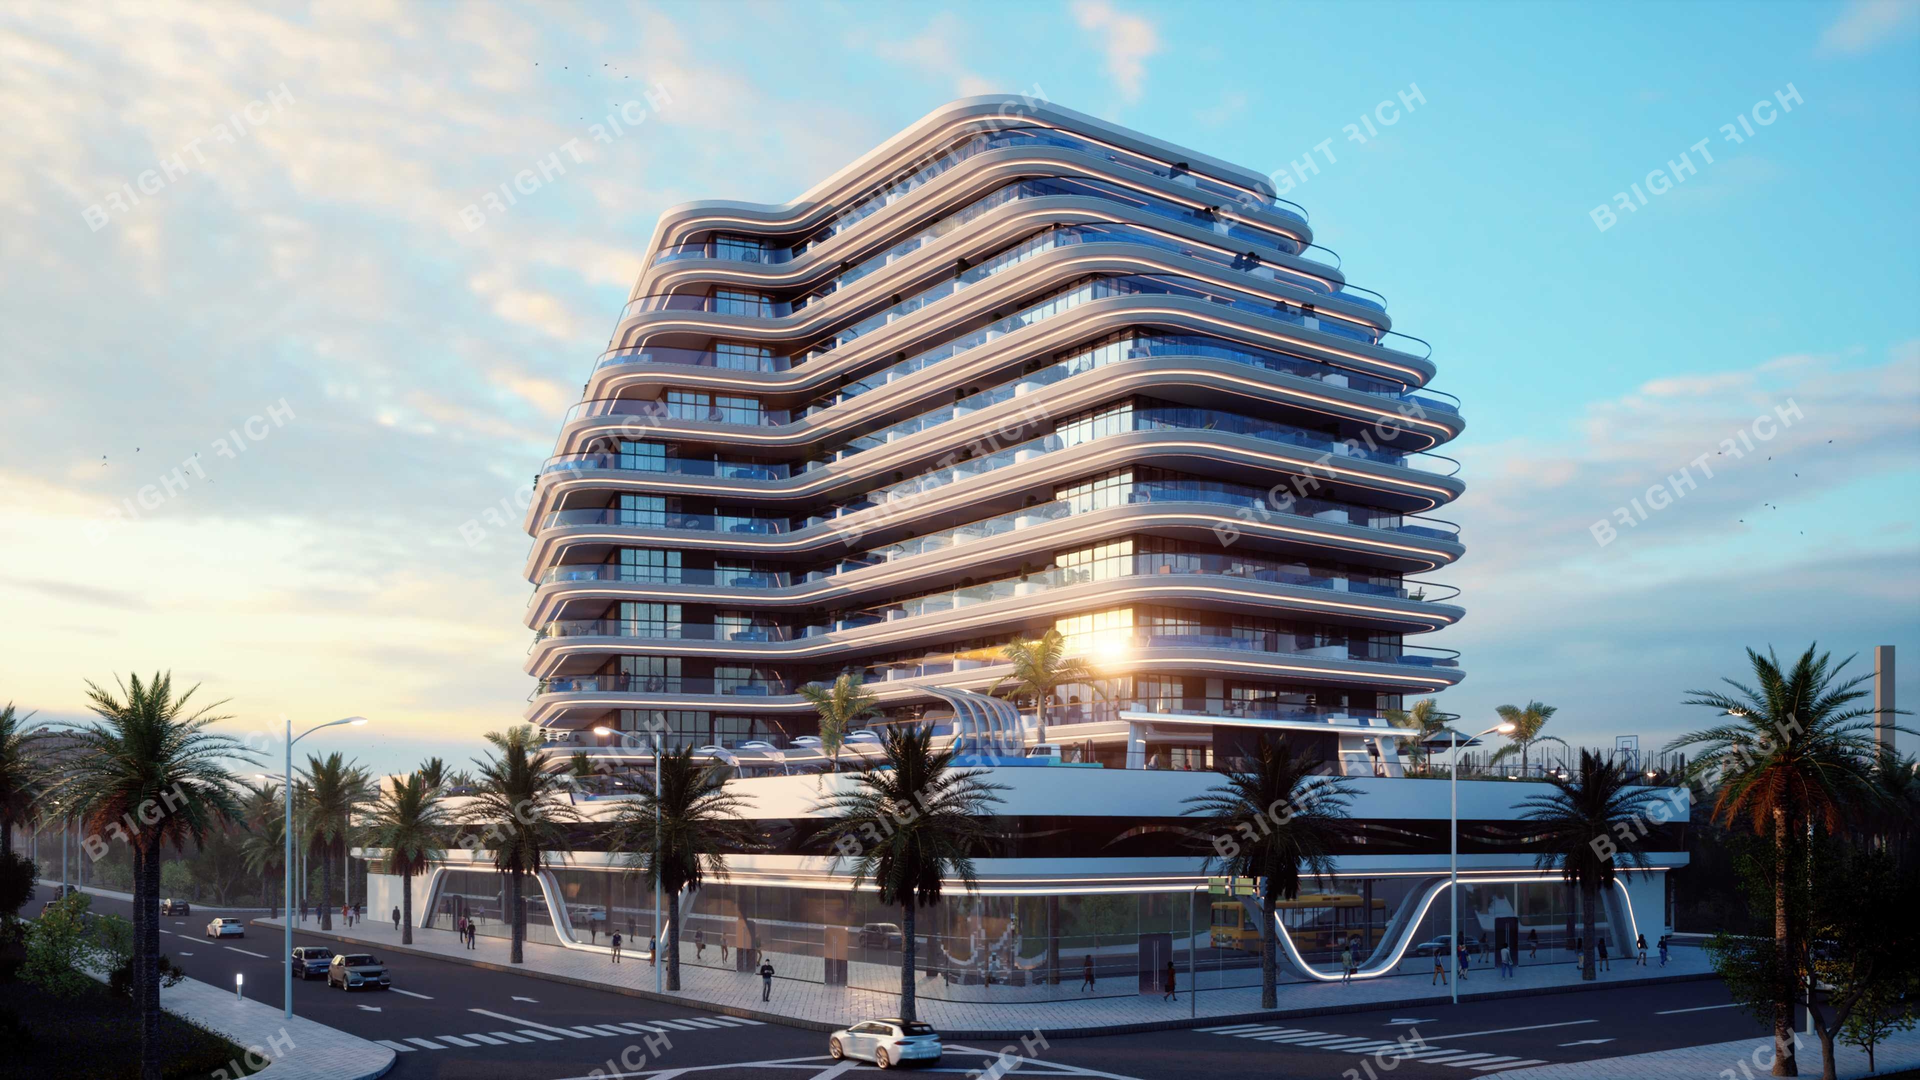 Samana Portofino, apart complex in Dubai - 22